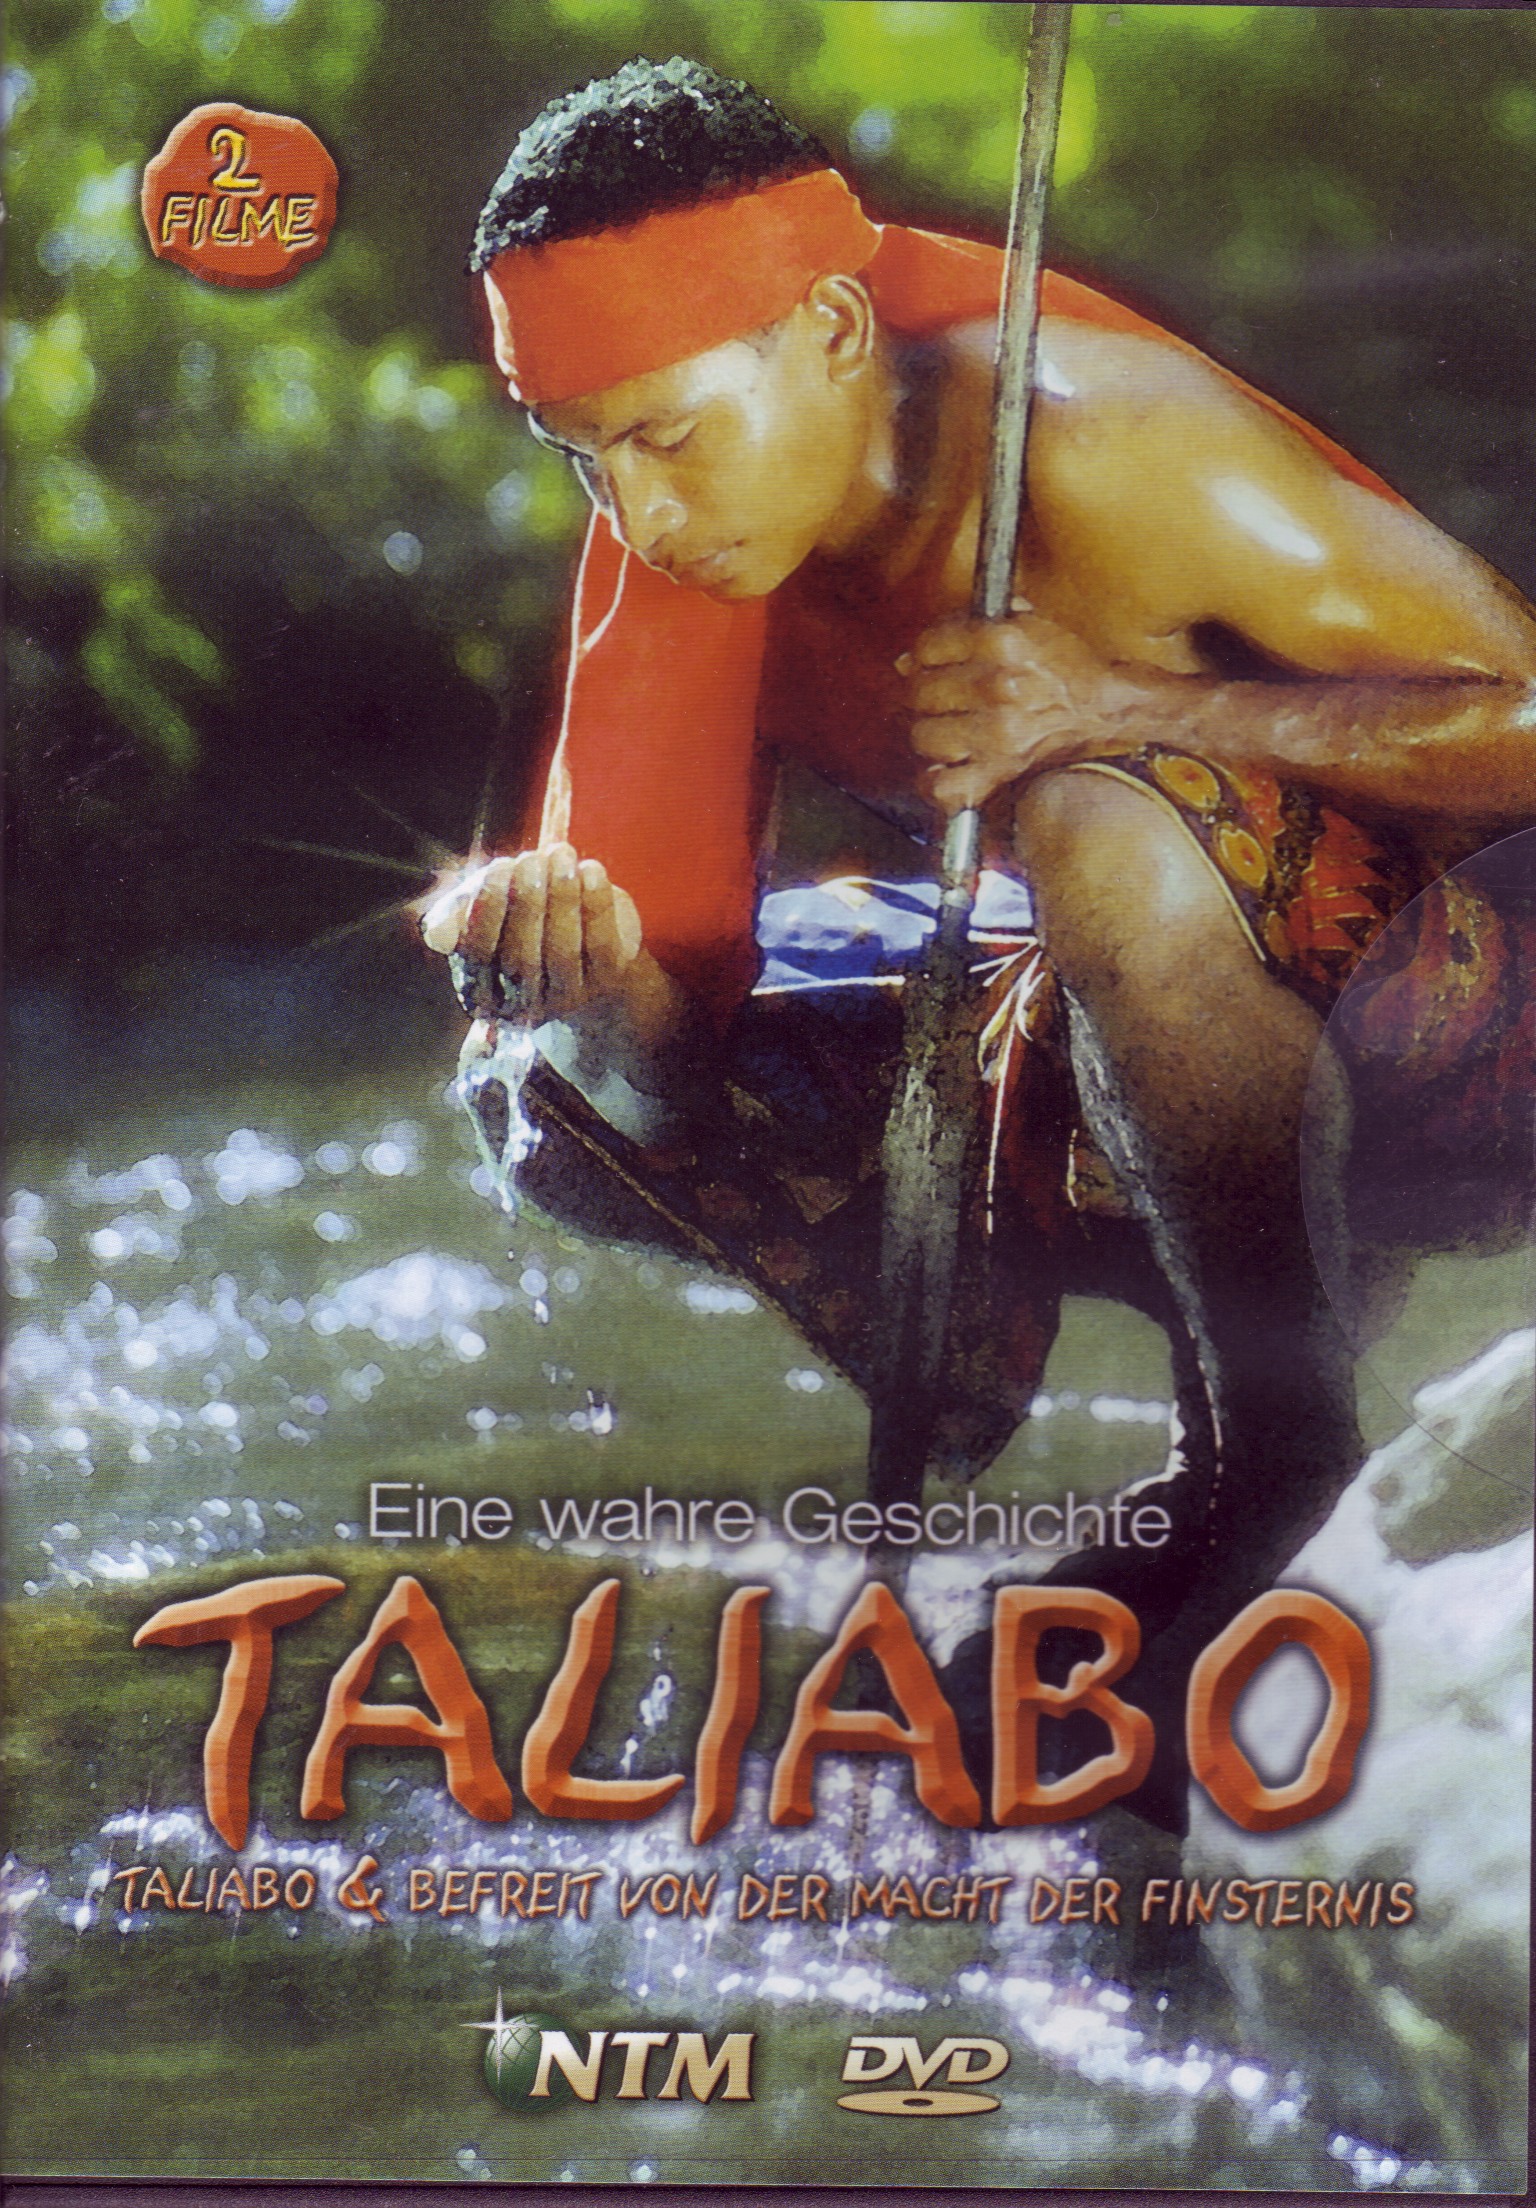 TALIABO - BEFREIT VON DER MACHT DER FINSTERNIS, DVD